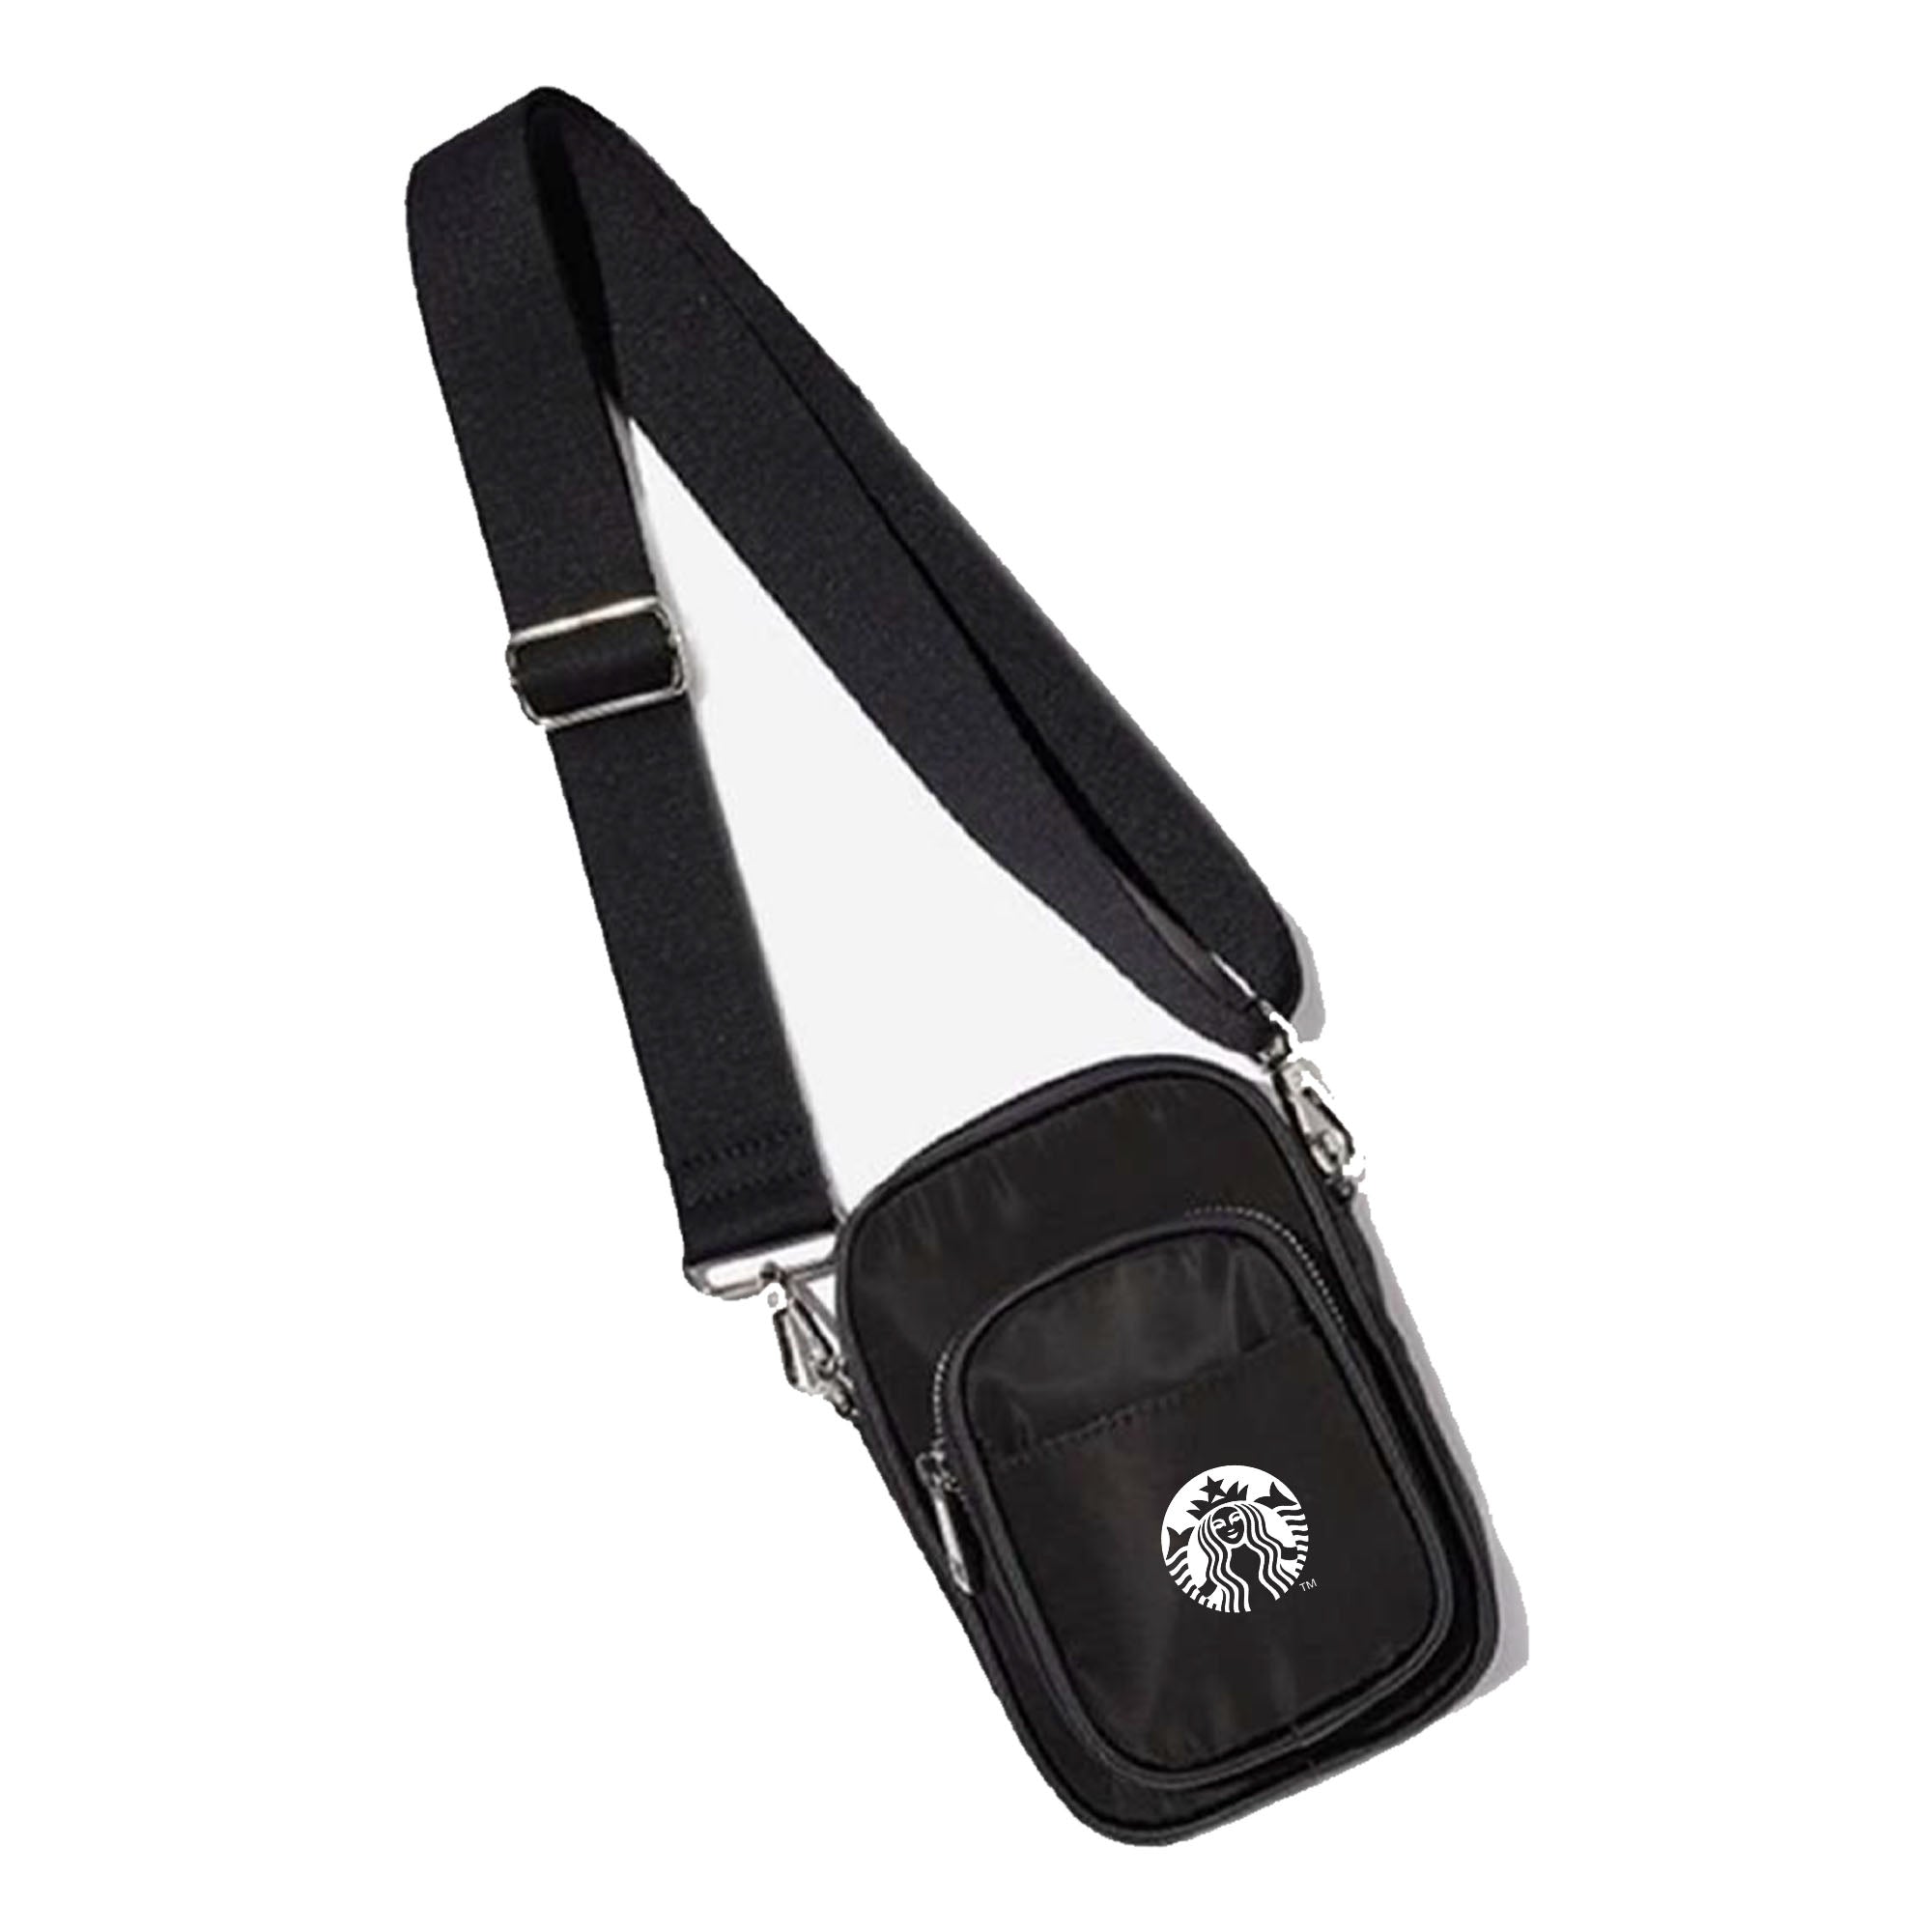 Verstellbare Brusttasche zum Umhängen – 3 Fächer